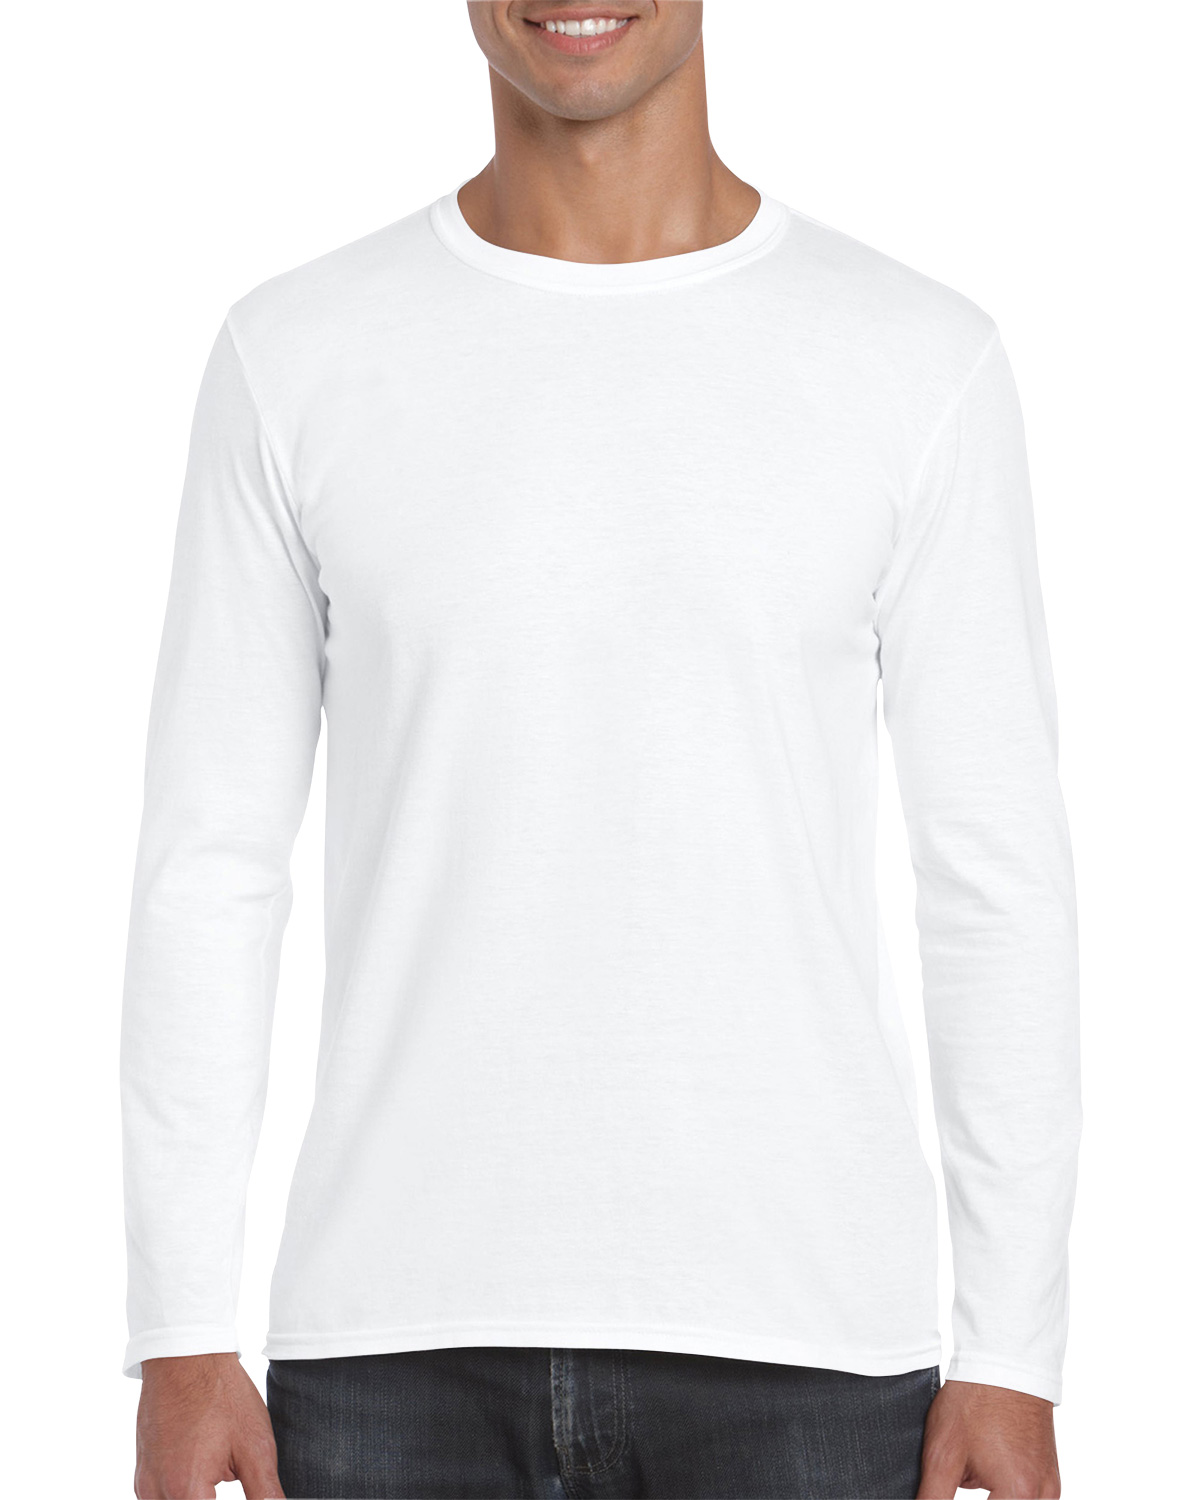 Download Man Wearing White Gildan 64400 Long Sleeve Shirt E Commerce Long Sleeve T Shirt Mockup Mockup Mark